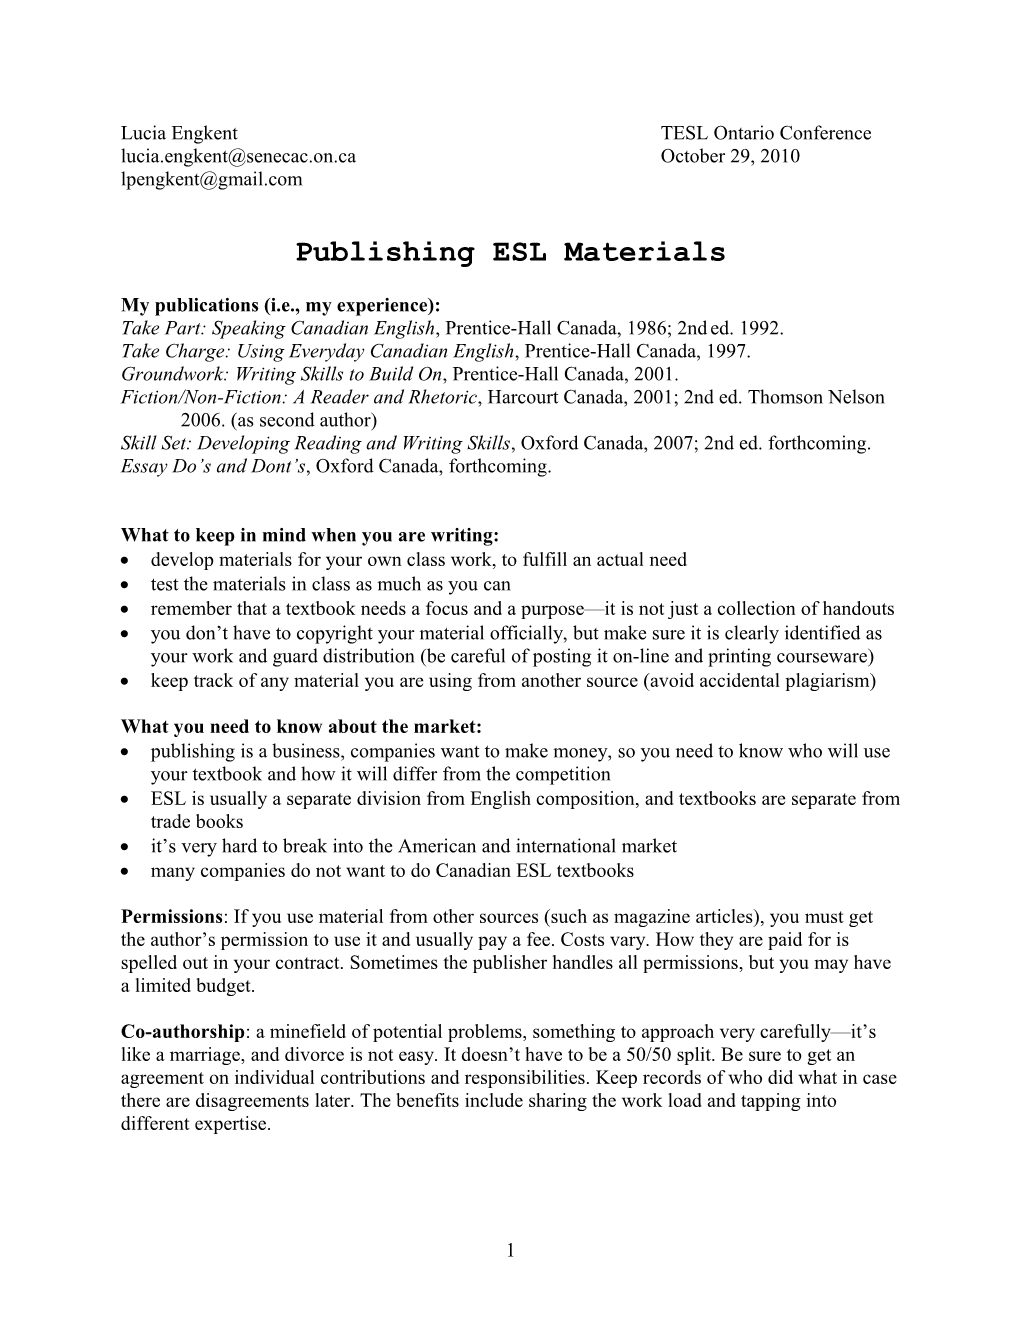 Publishing ESL Materials